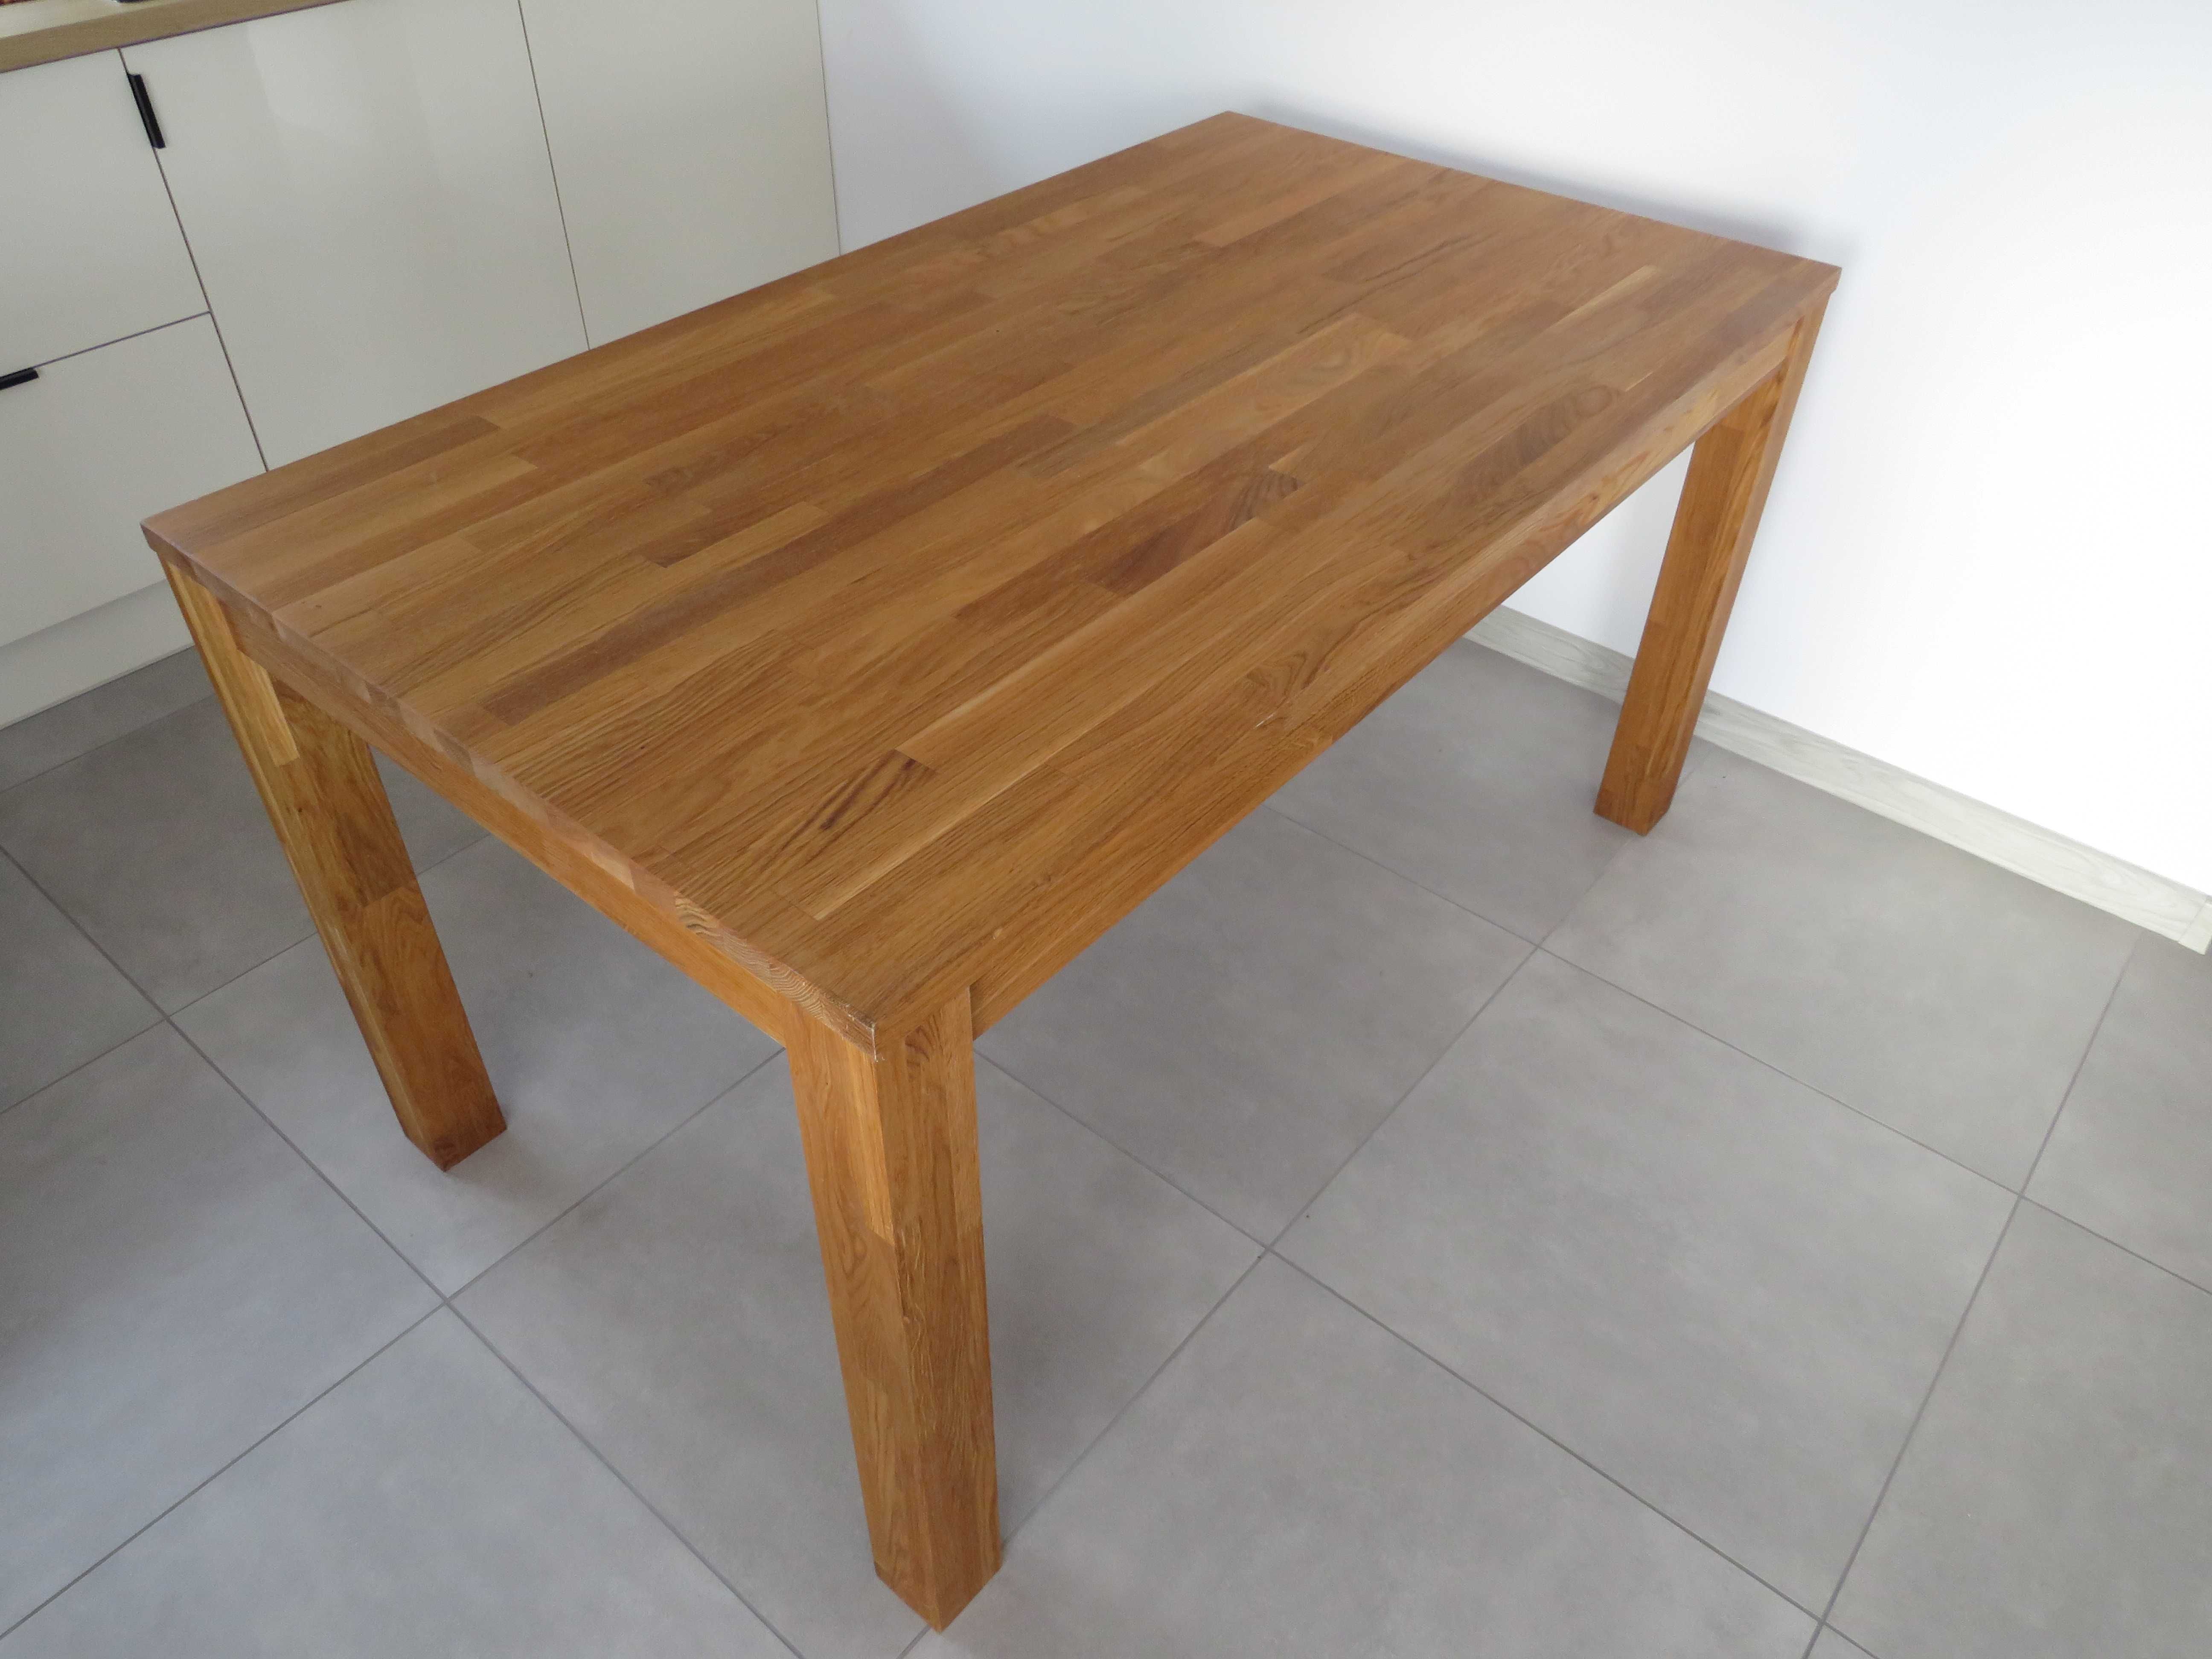 stół drewniany 150 cm x 85 cm wysokość 78 cm